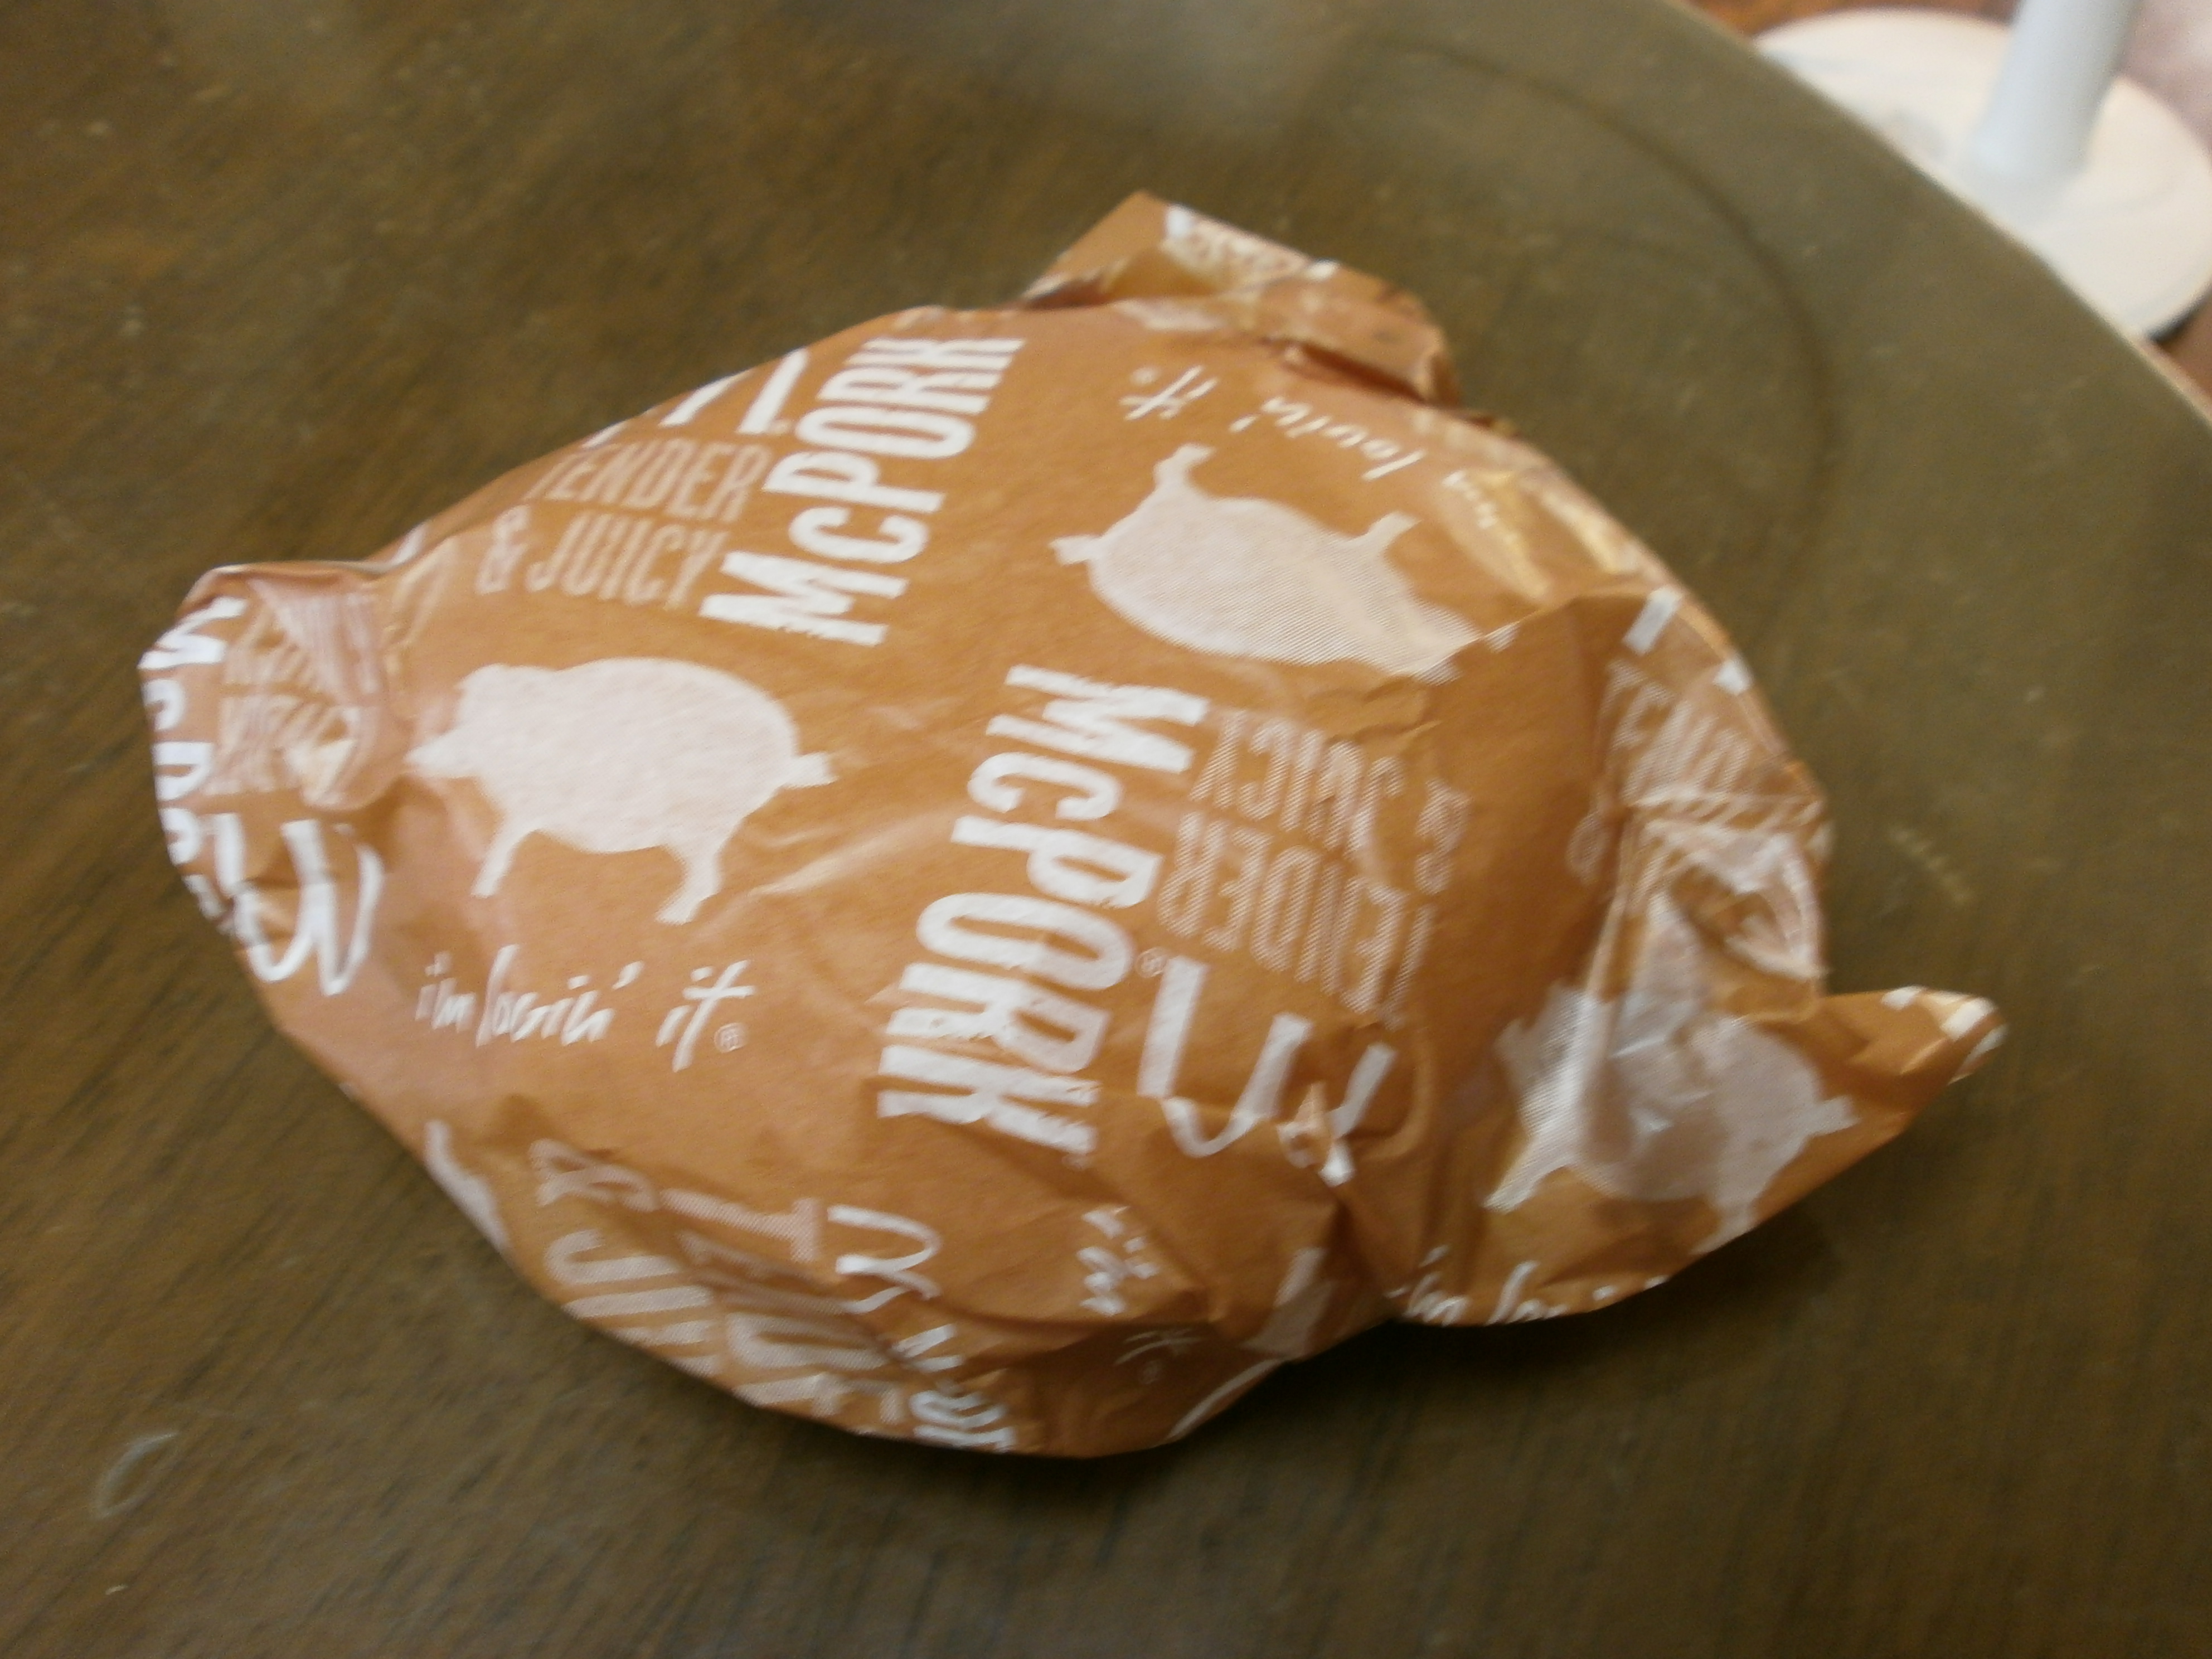 Mack carne de cerdo (McDonald)